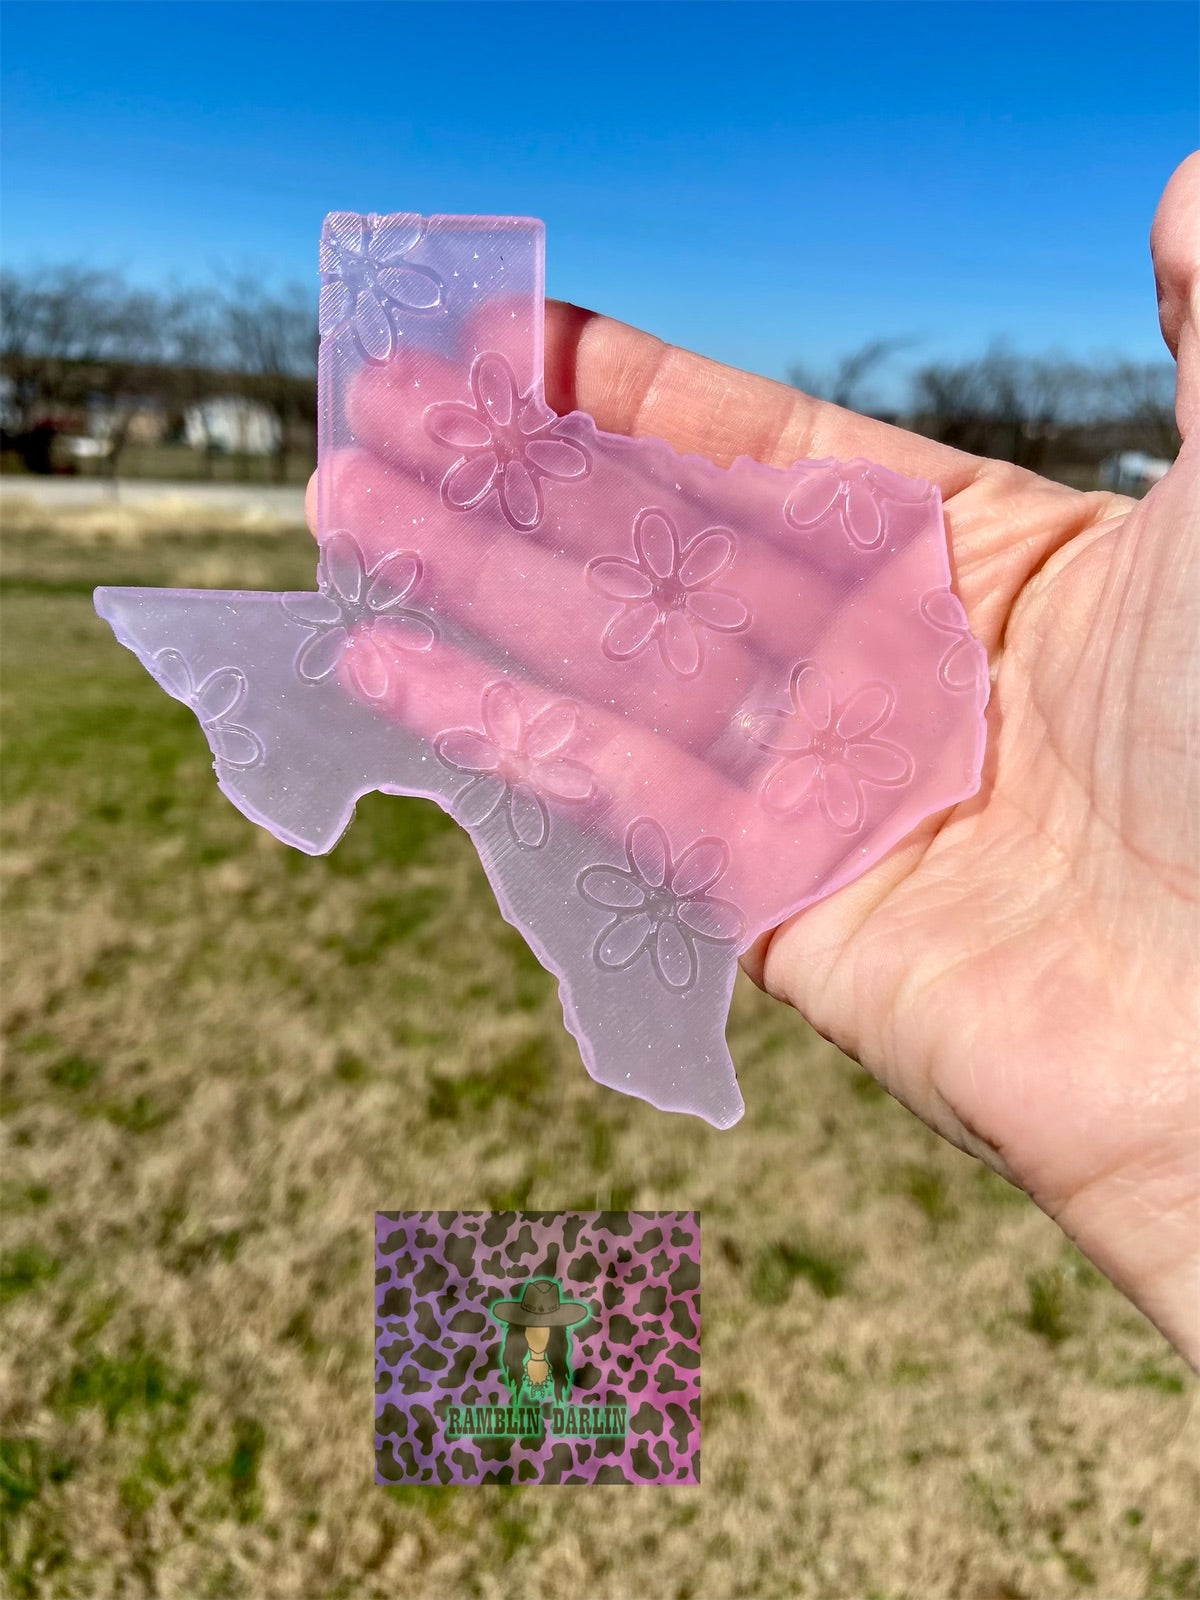 Plain Texas Insert Mold